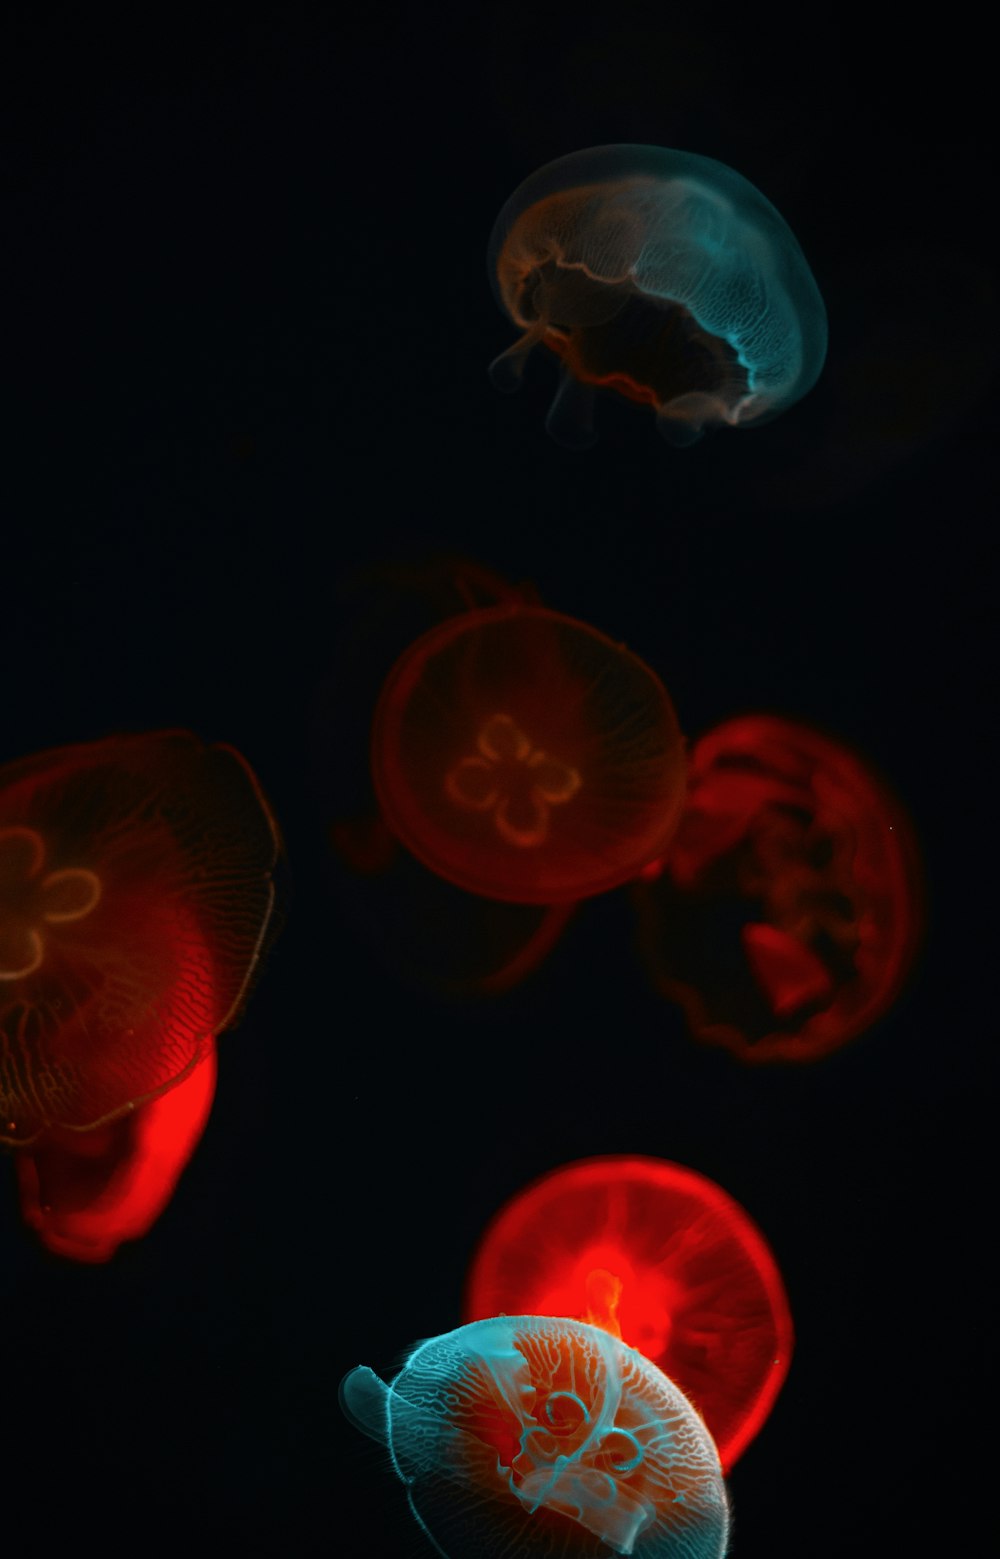 medusas rojas en cuarto oscuro